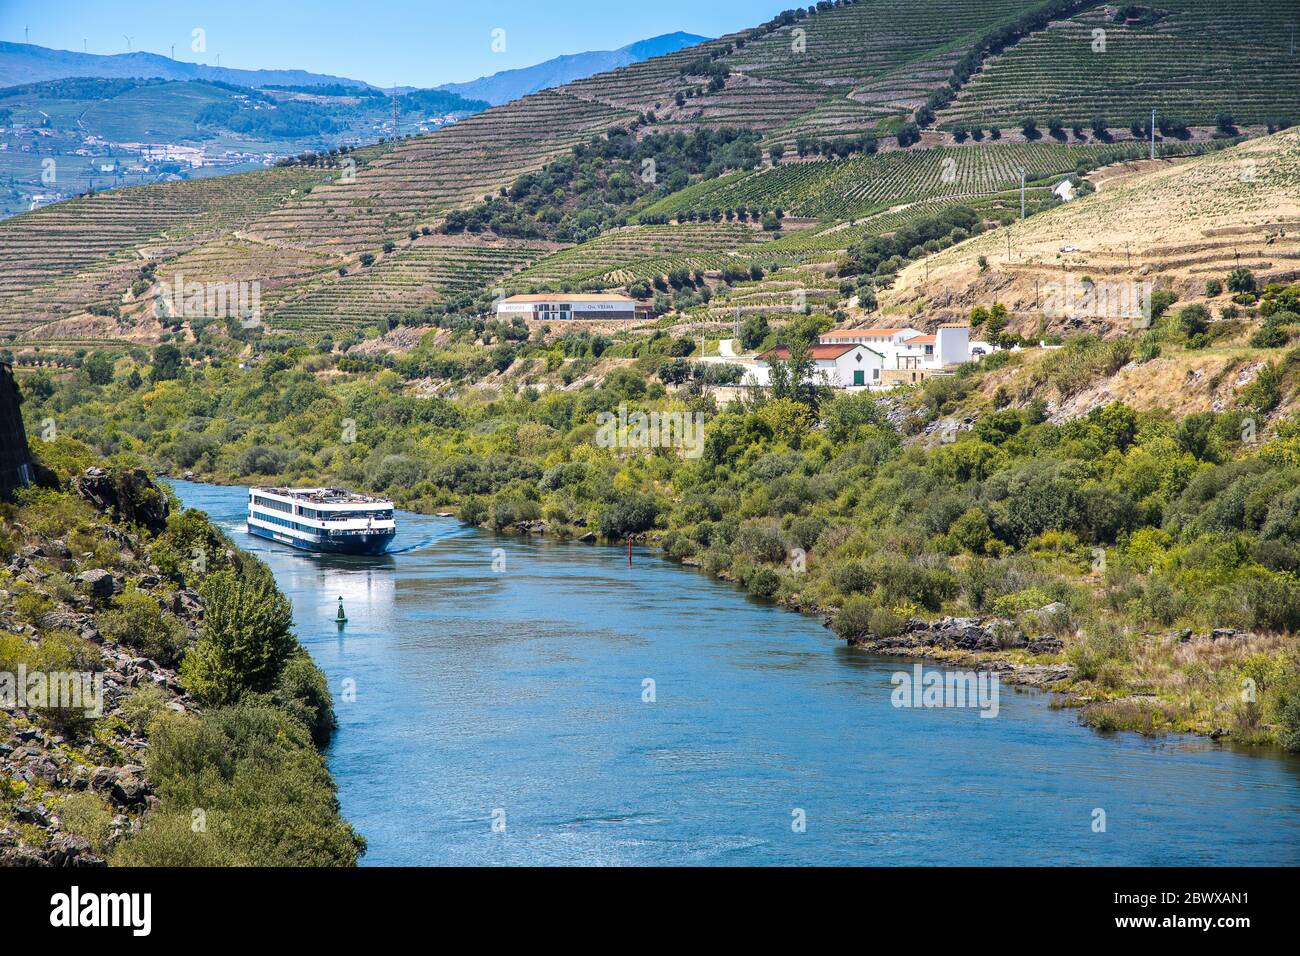 Flusskreuzfahrtschiff im Tal, umgeben von terrassenförmigen Weinbergen entlang des Douro Flusses Portugal Stockfoto